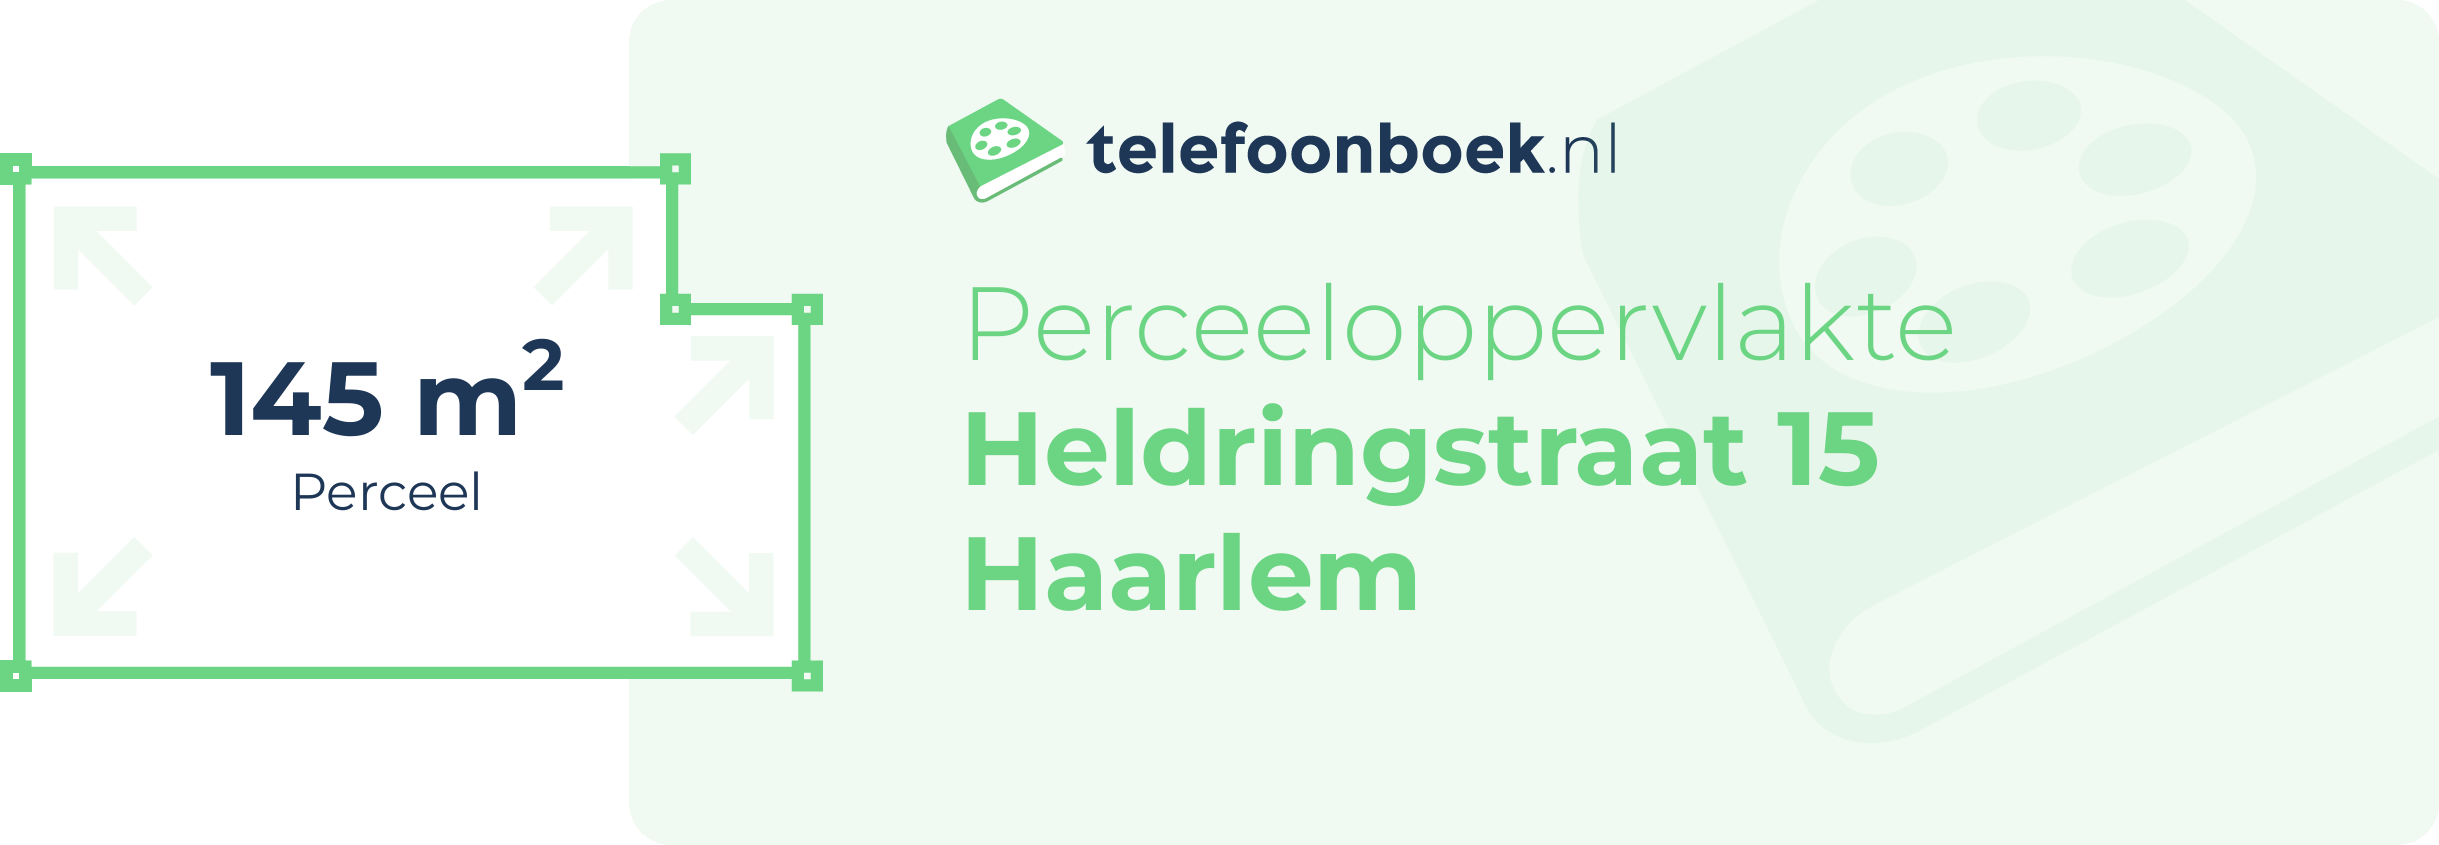 Perceeloppervlakte Heldringstraat 15 Haarlem